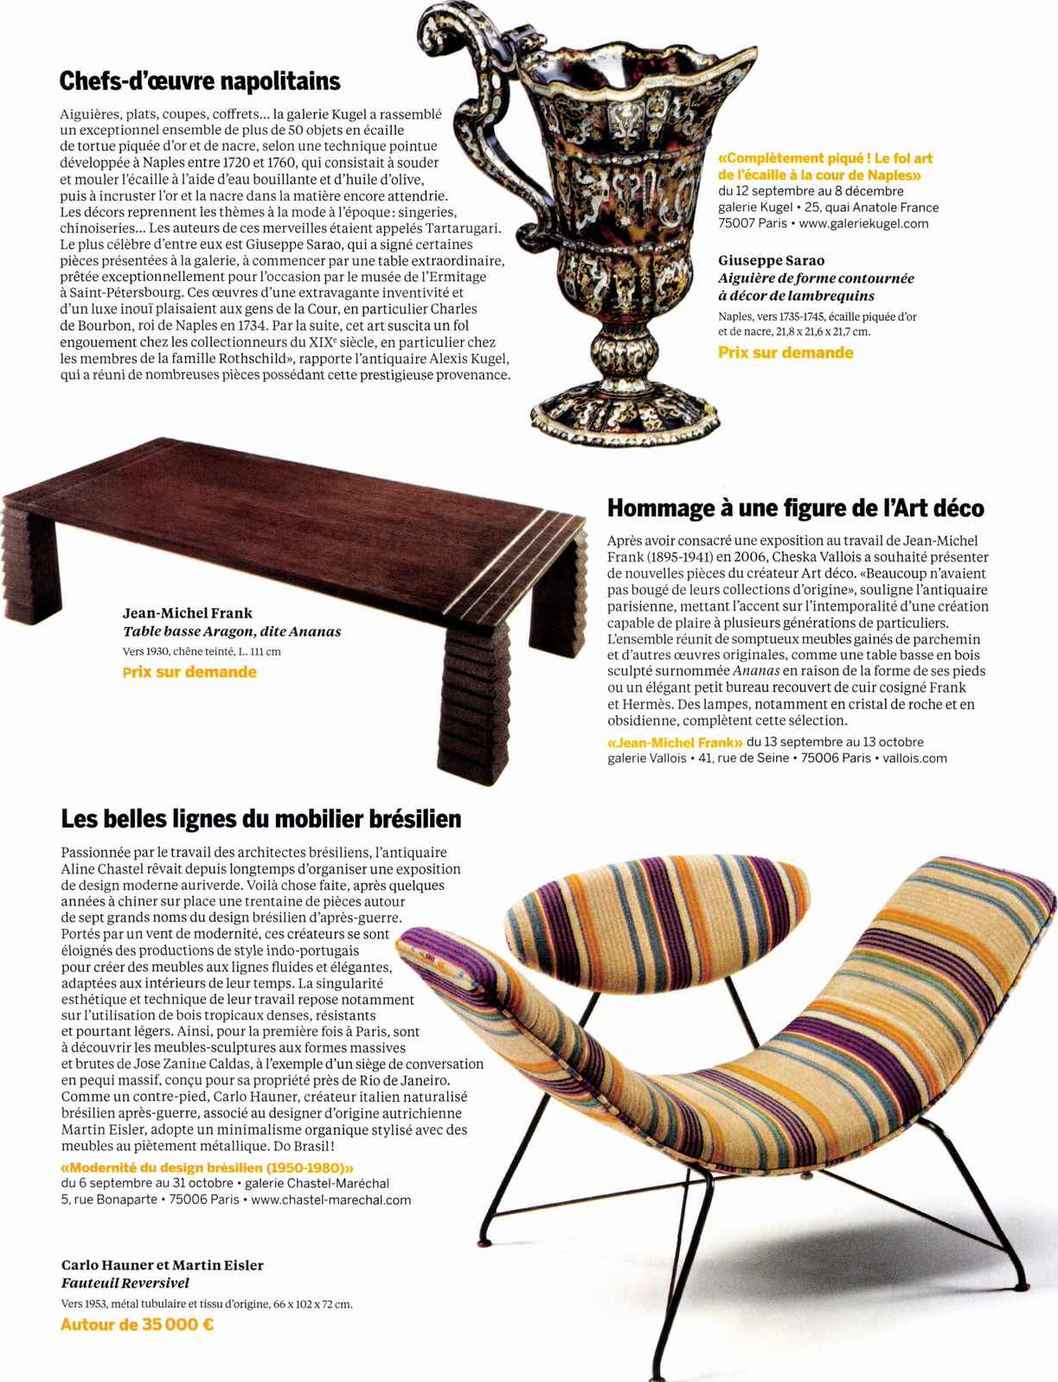 Beaux Arts magazine – Les belles lignes du mobilier brésilien – Septembre 2018